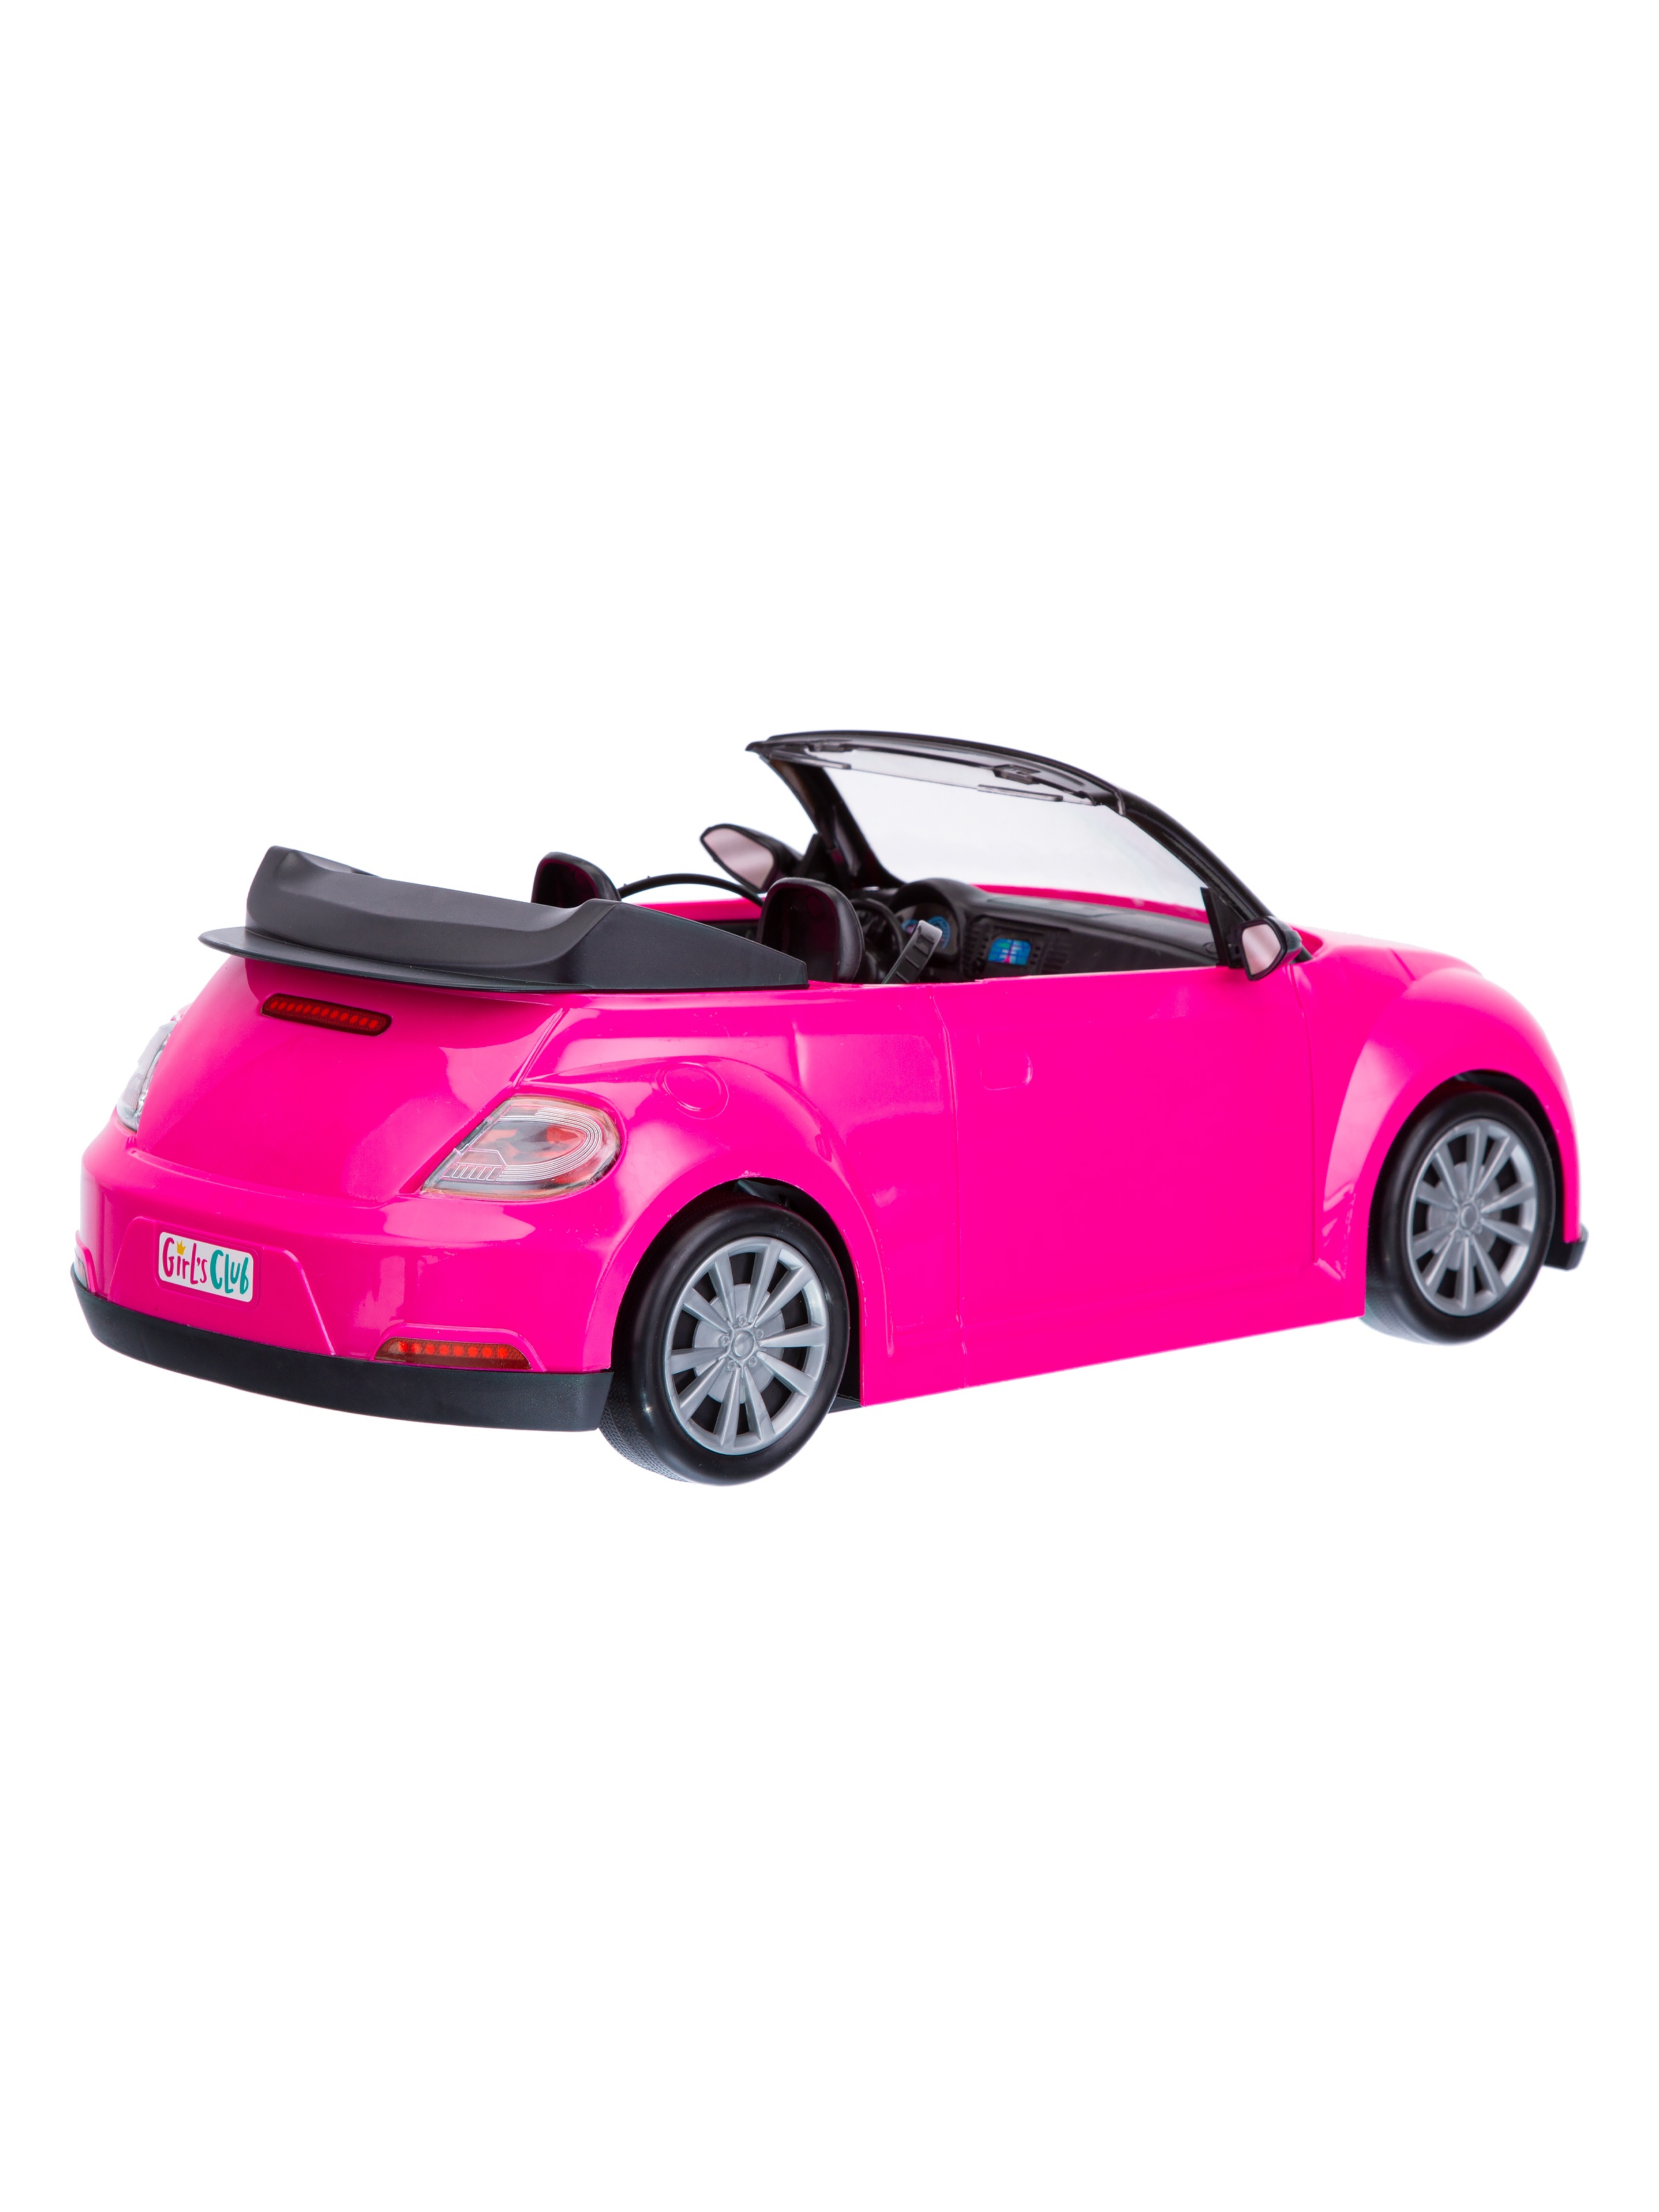 Машинка на бат. Girls Club цвет розовый, свет фар, музыка, кукла в комплекте, в/к 46*23*23 см